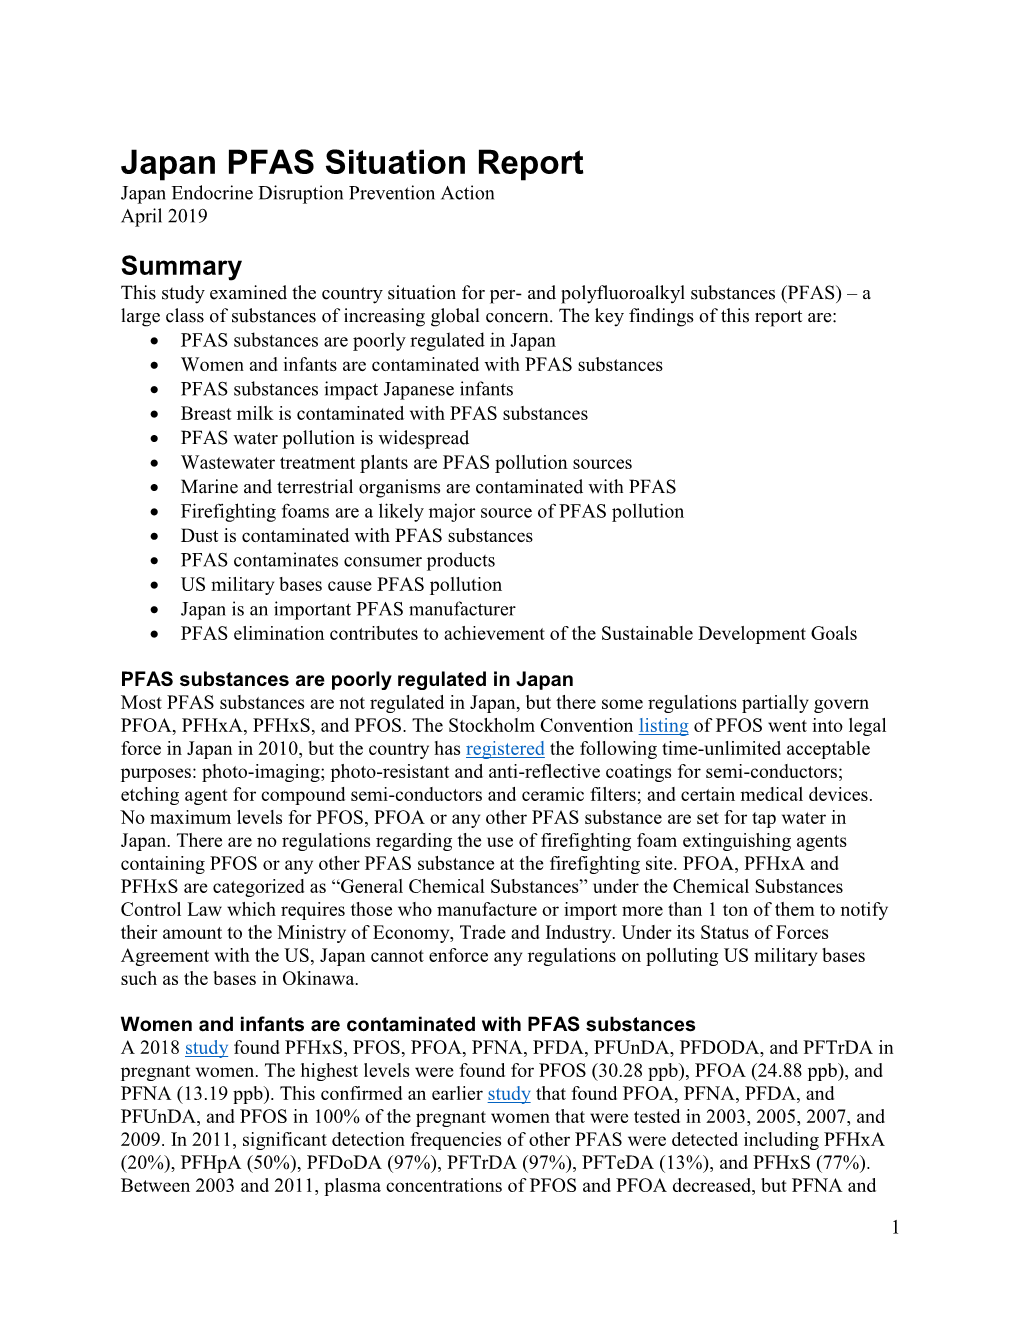 Japan PFAS Situation Report Japan Endocrine Disruption Prevention Action April 2019